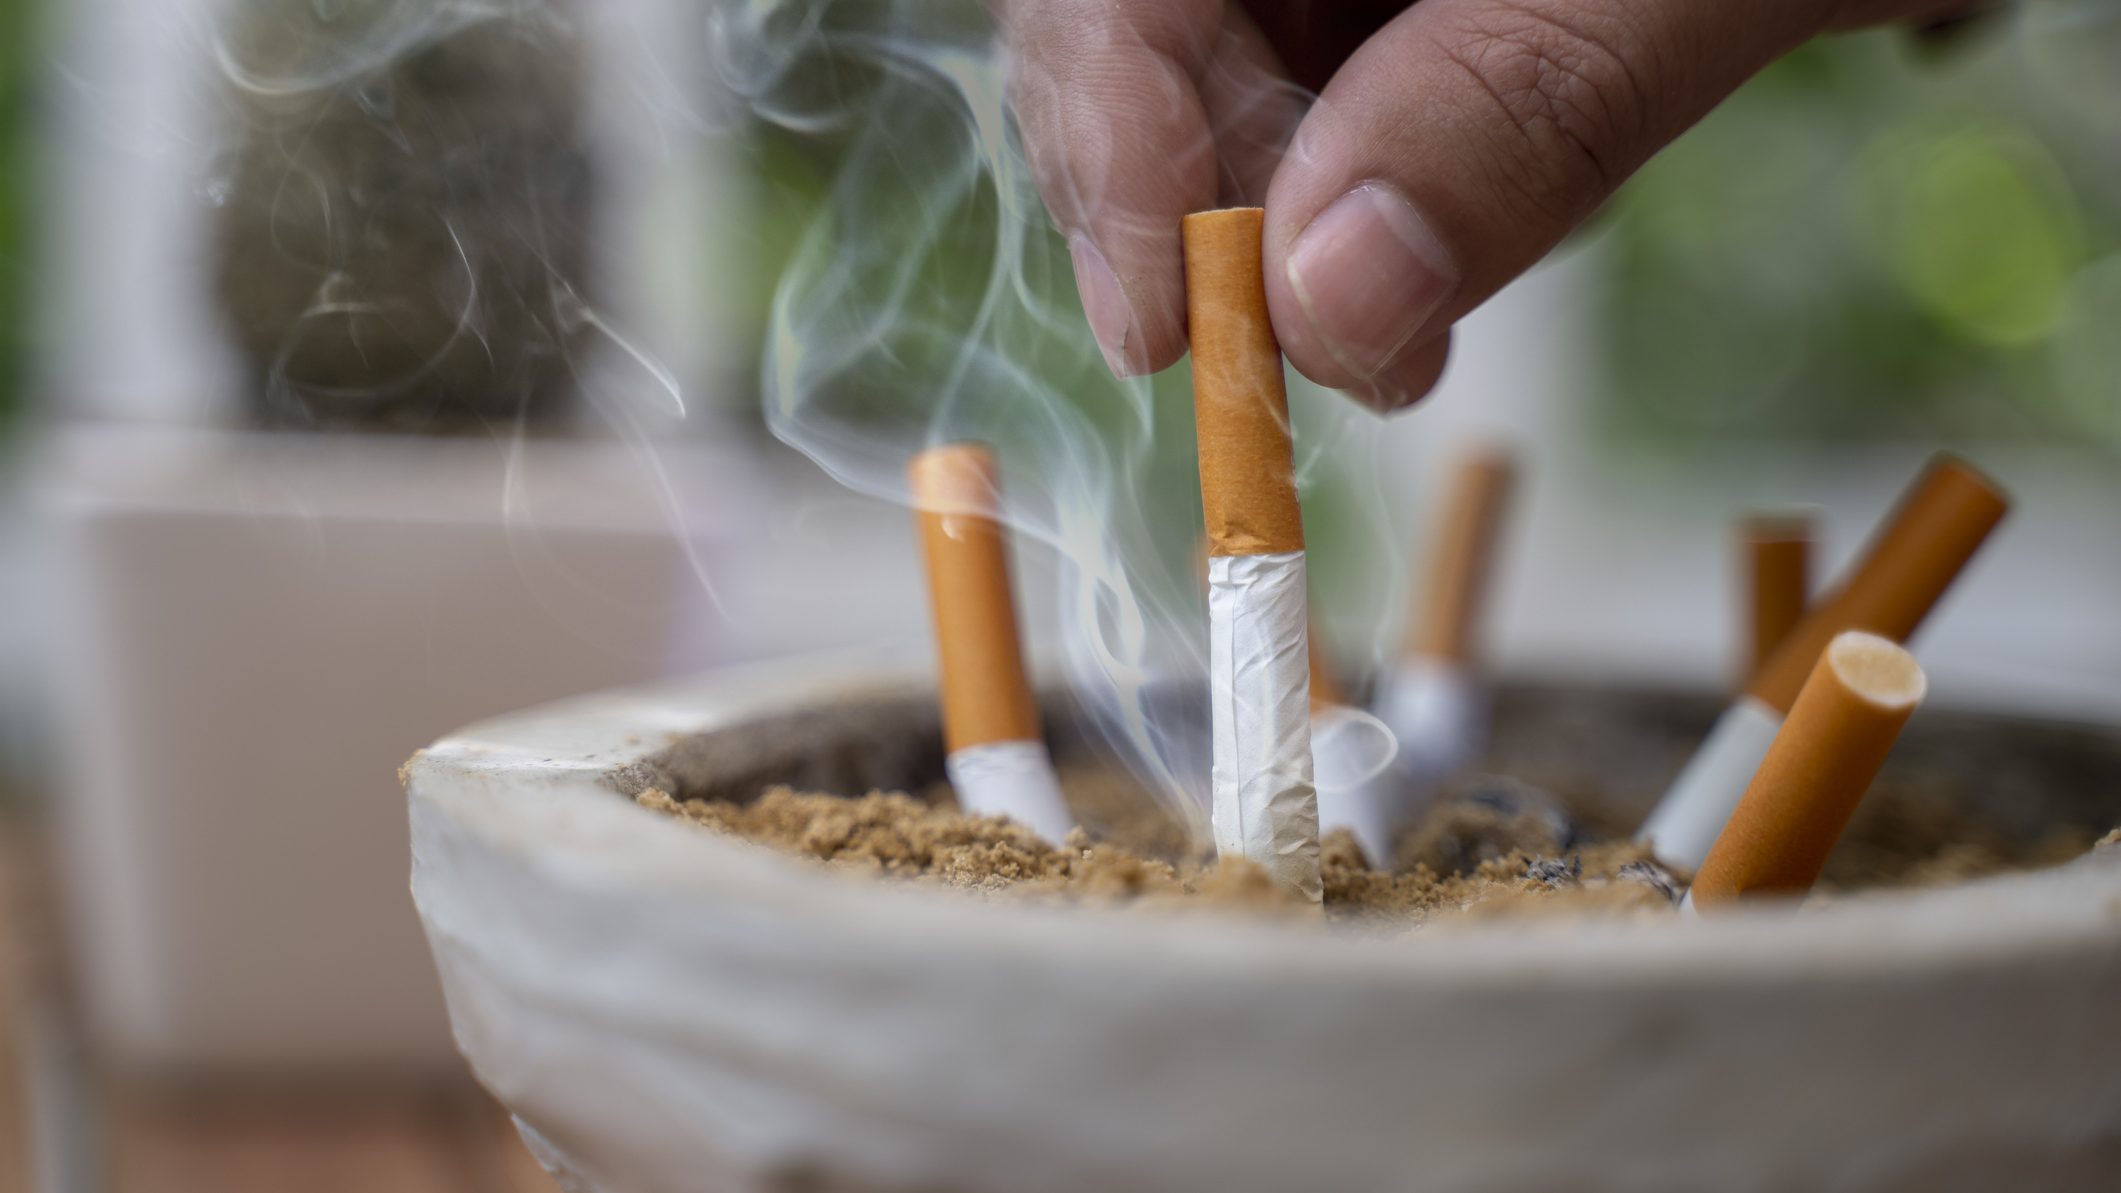 dohányzásellenes törvények 2021)